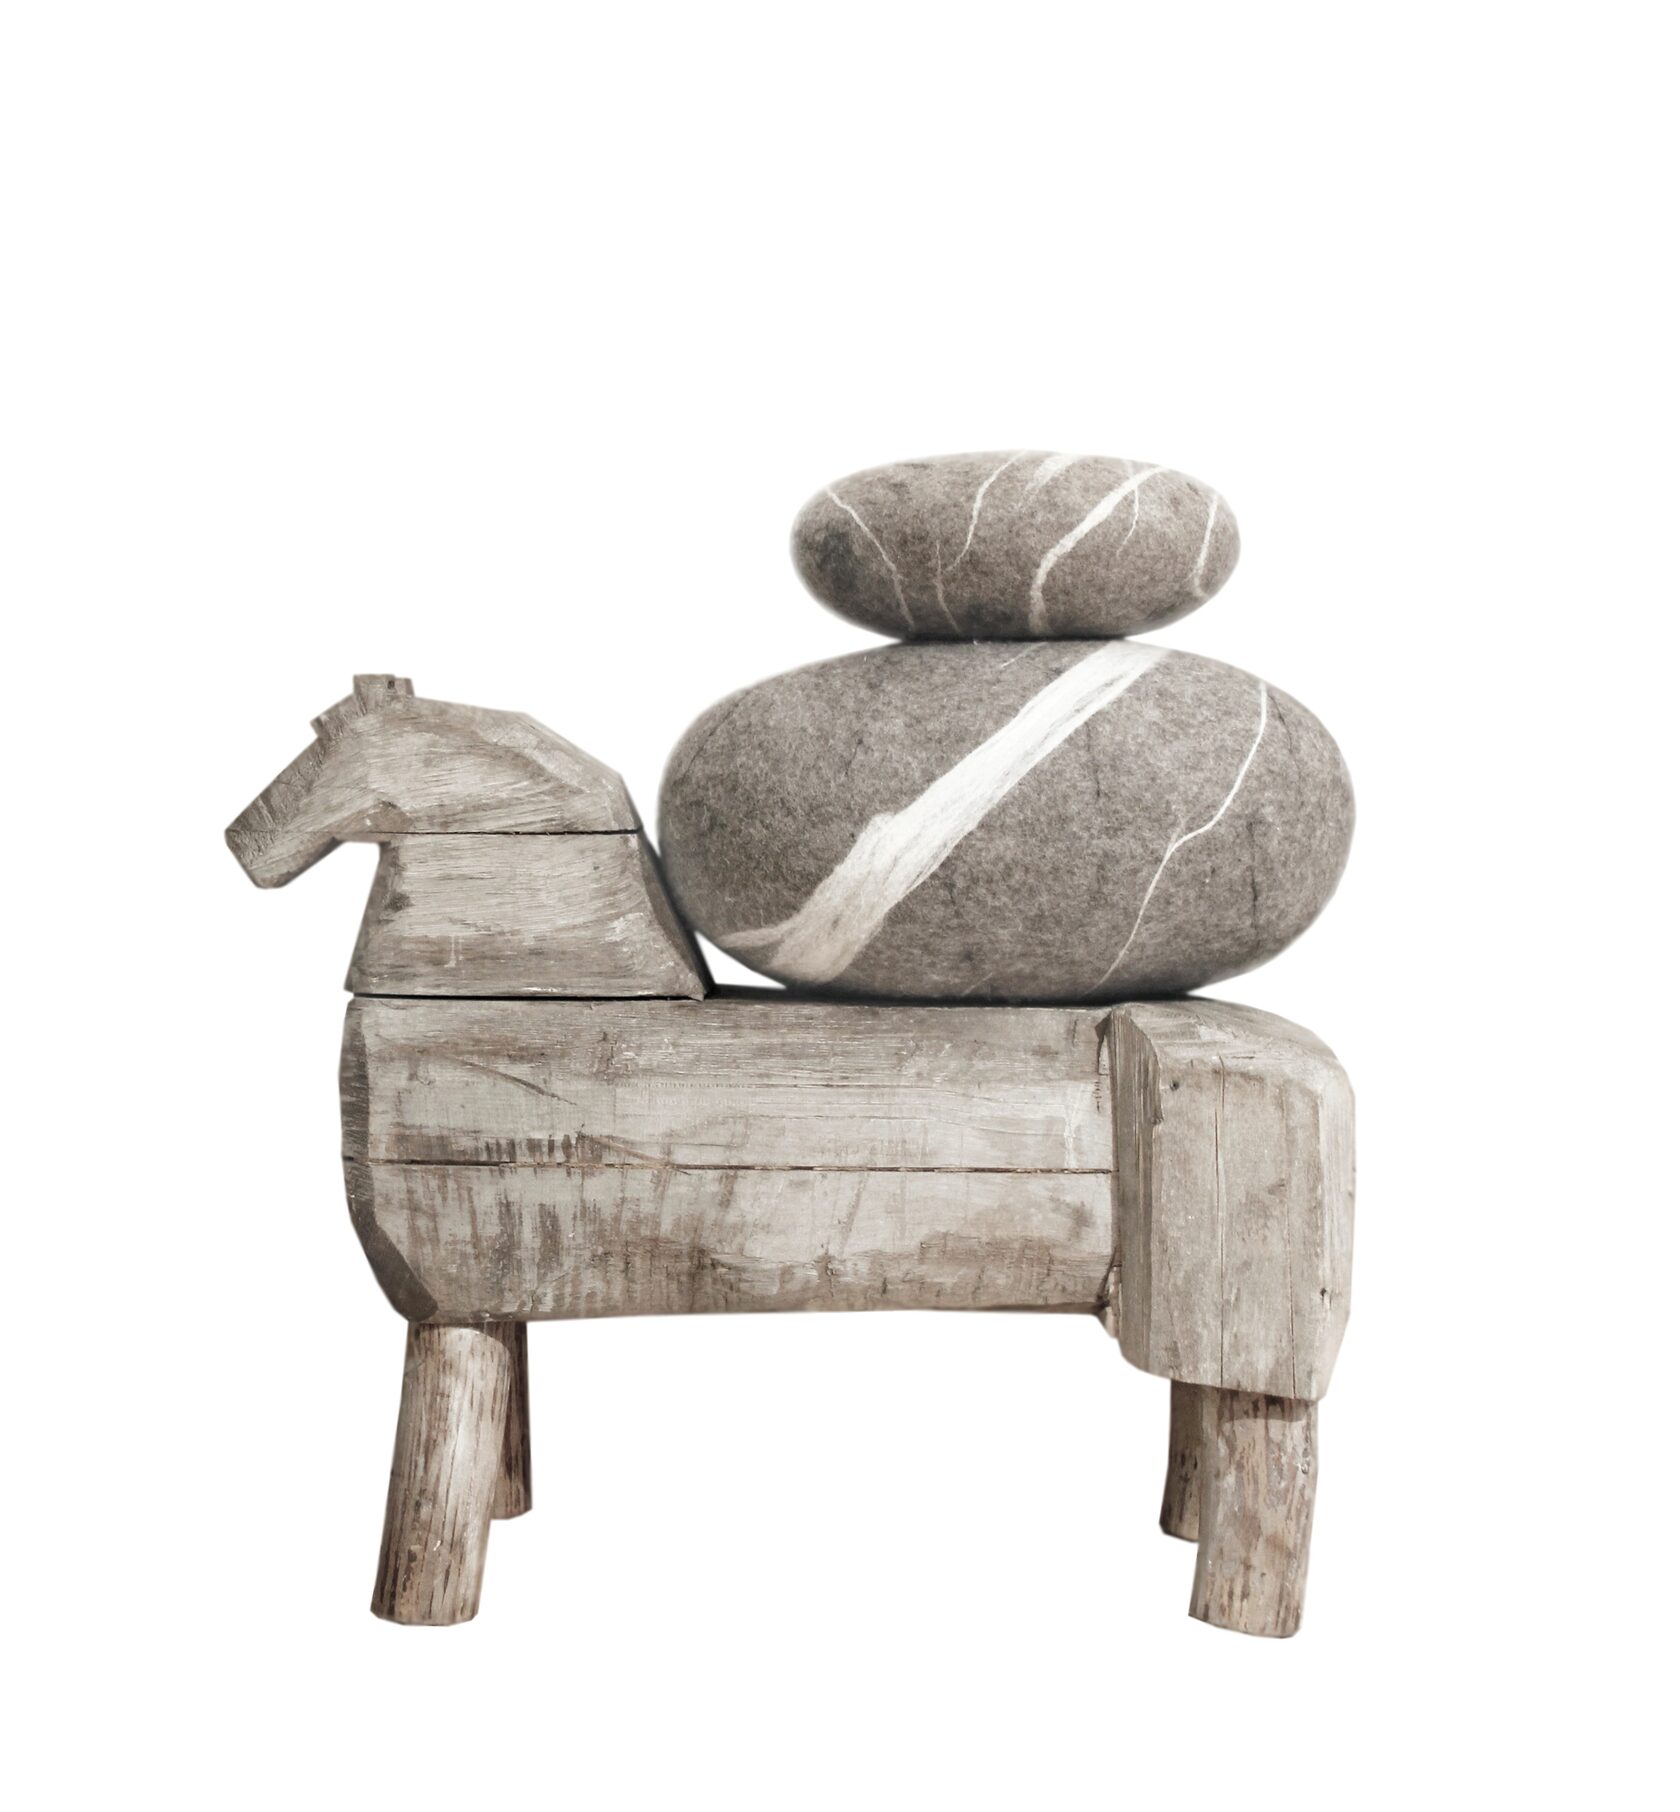 Два войлочных пуфа-камня КАТСУ разных размеров и моделей лежат на винтажной скамейке в форме лошади